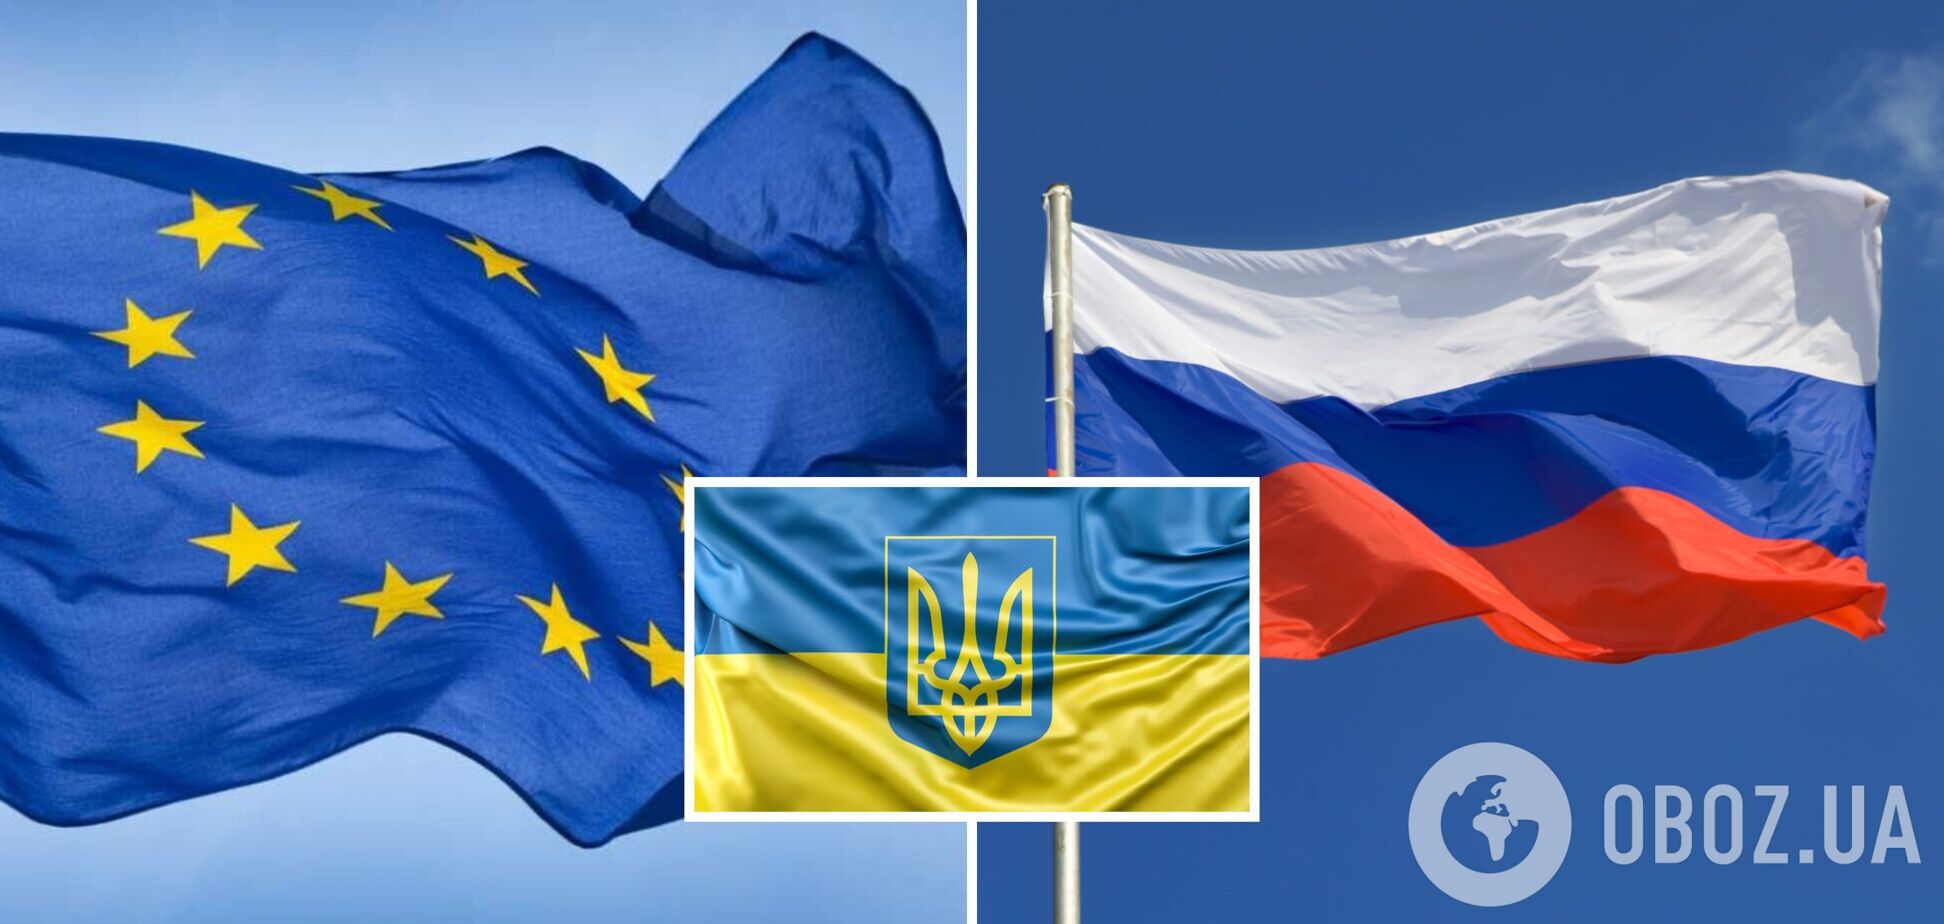 Кремль активизировал политическую агентуру в Европе. Как ультраправые действуют против Украины